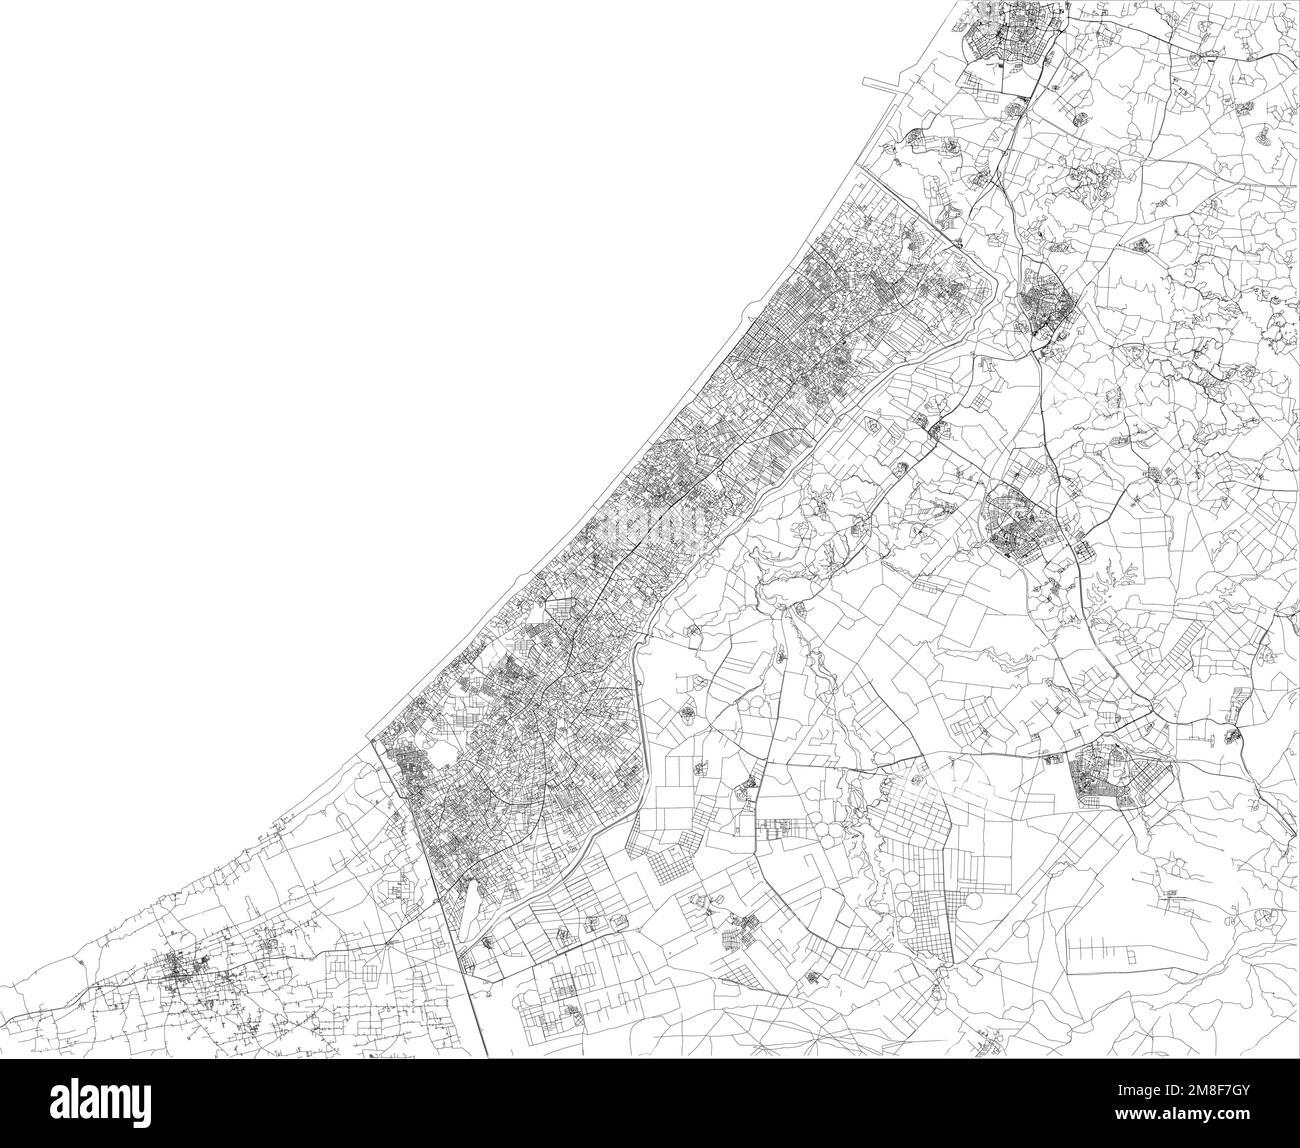 La vue satellite de la bande de Gaza est un territoire palestinien autonome sur la côte est de la mer Méditerranée. Carte, rues de la région Illustration de Vecteur